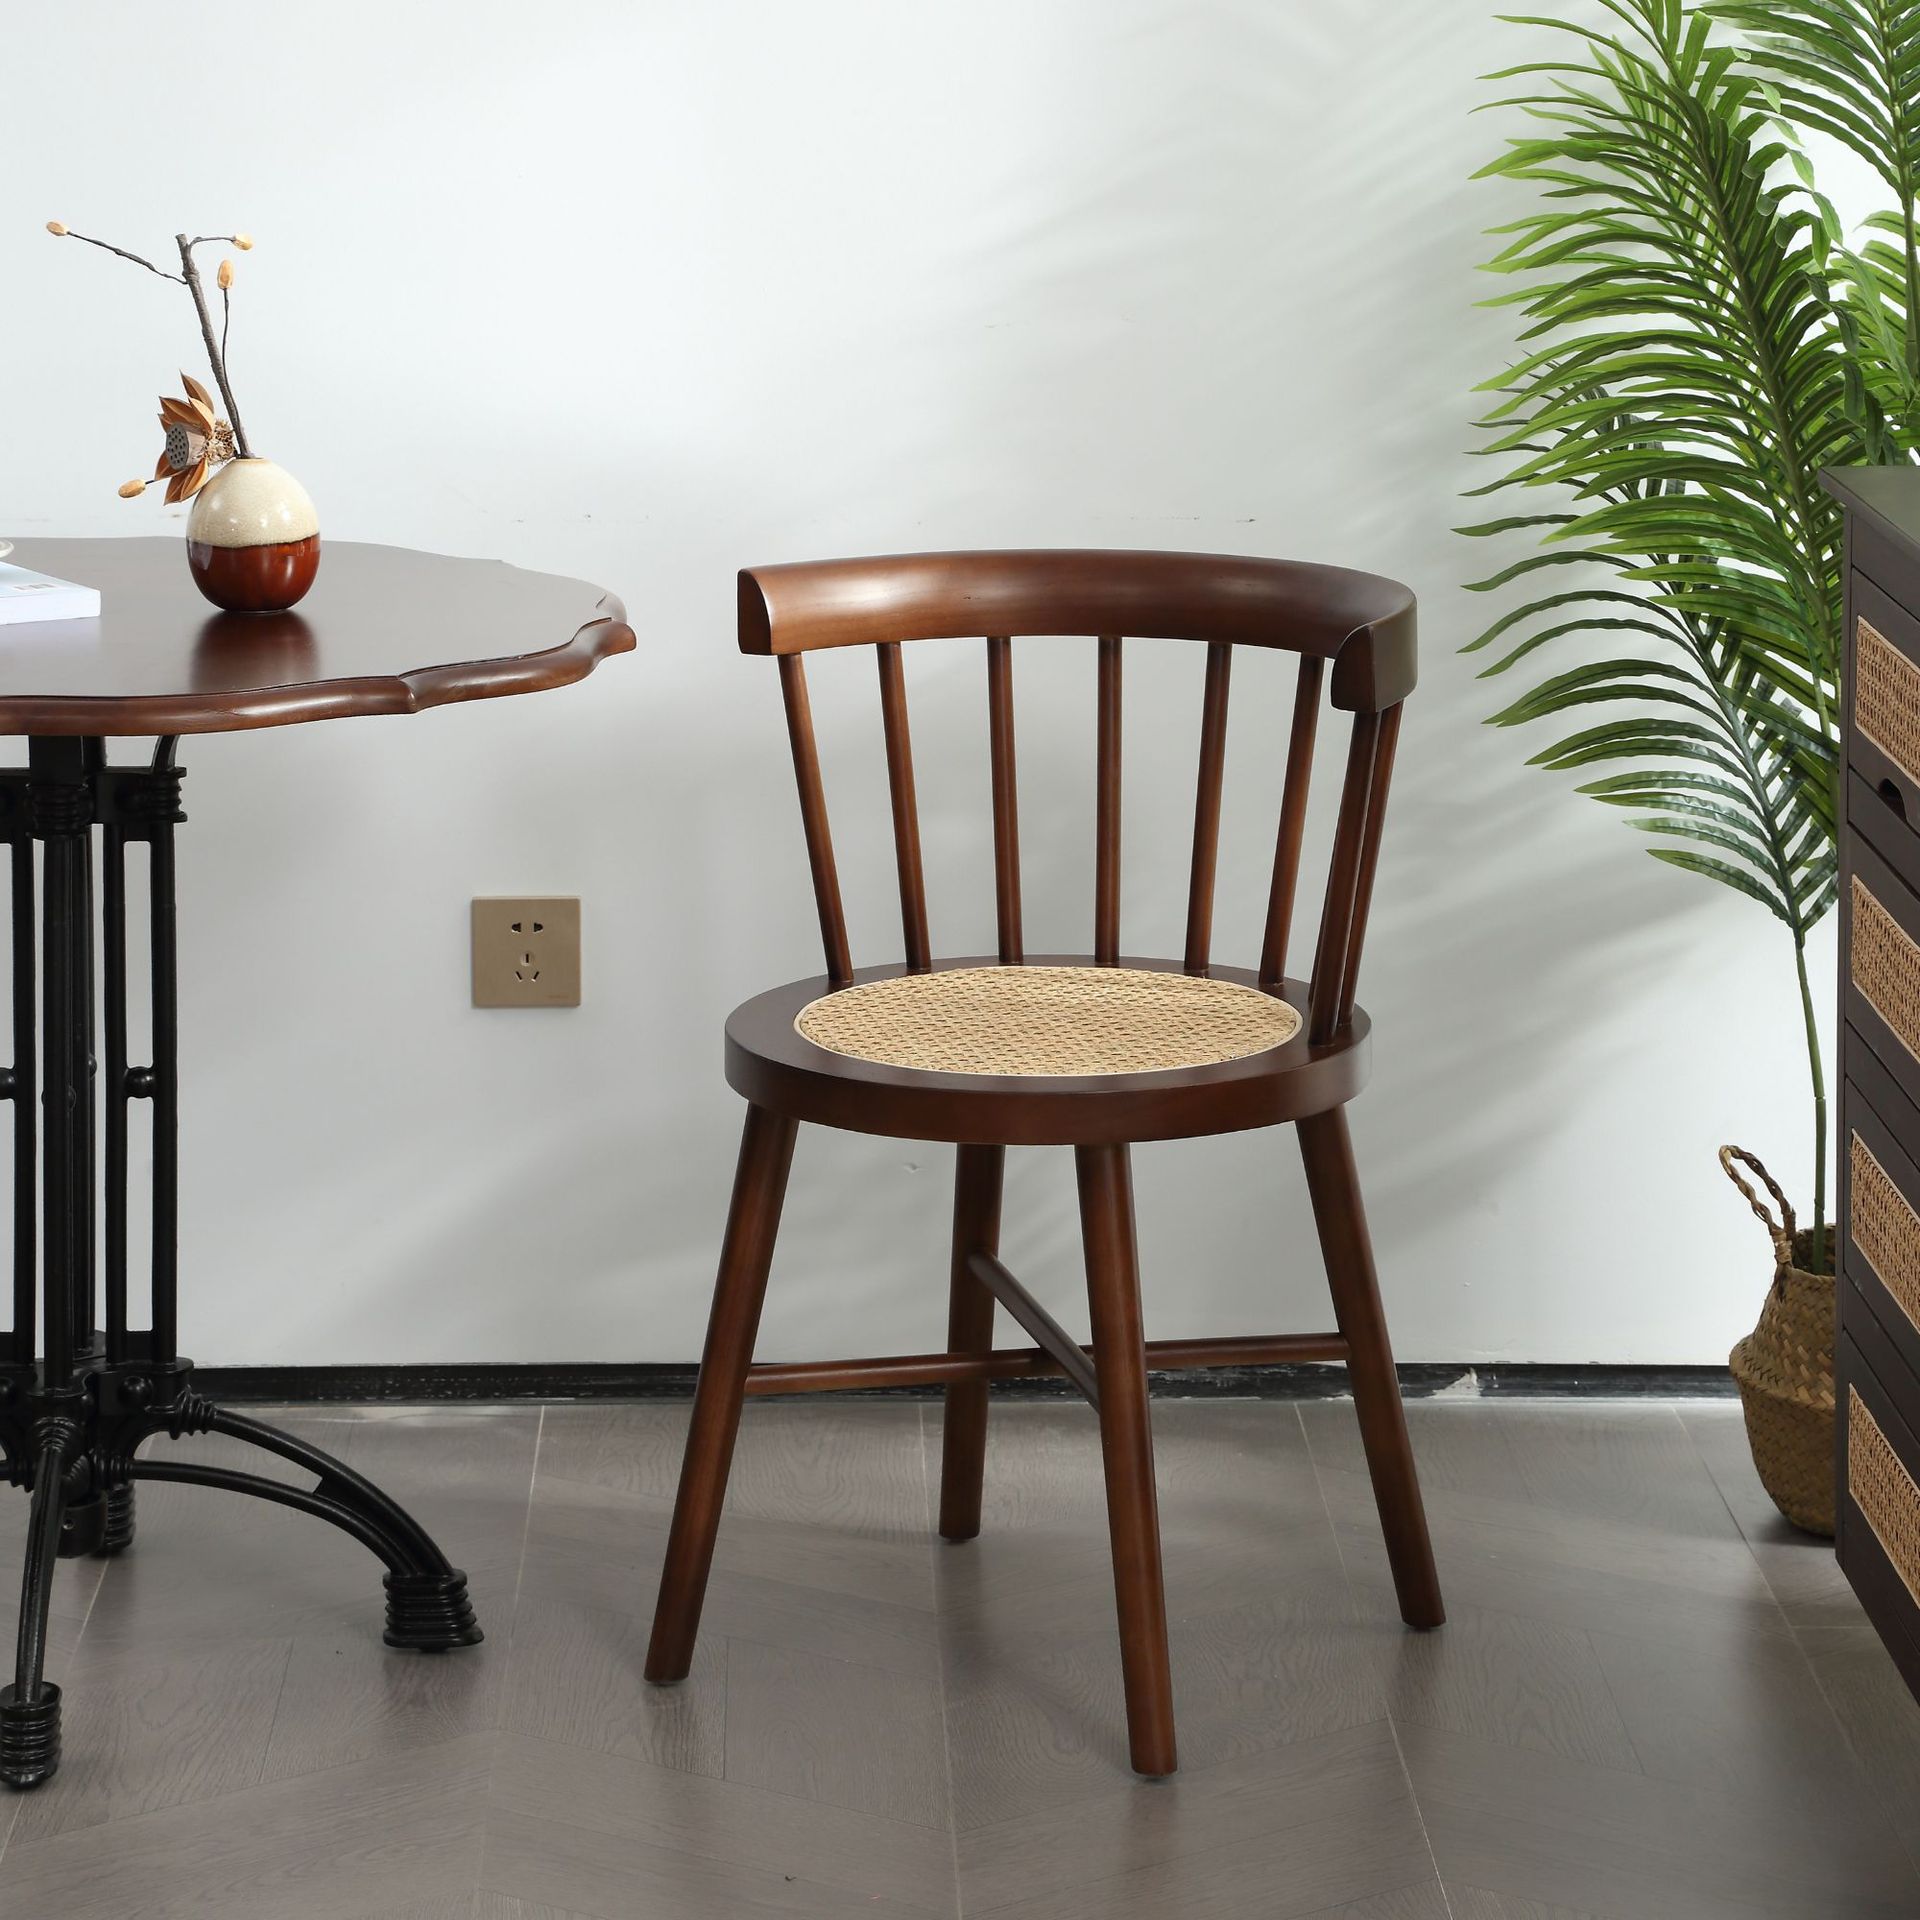 日式实木藤编餐桌椅子家用休闲温莎公主椅复古餐厅奶茶店商用椅子